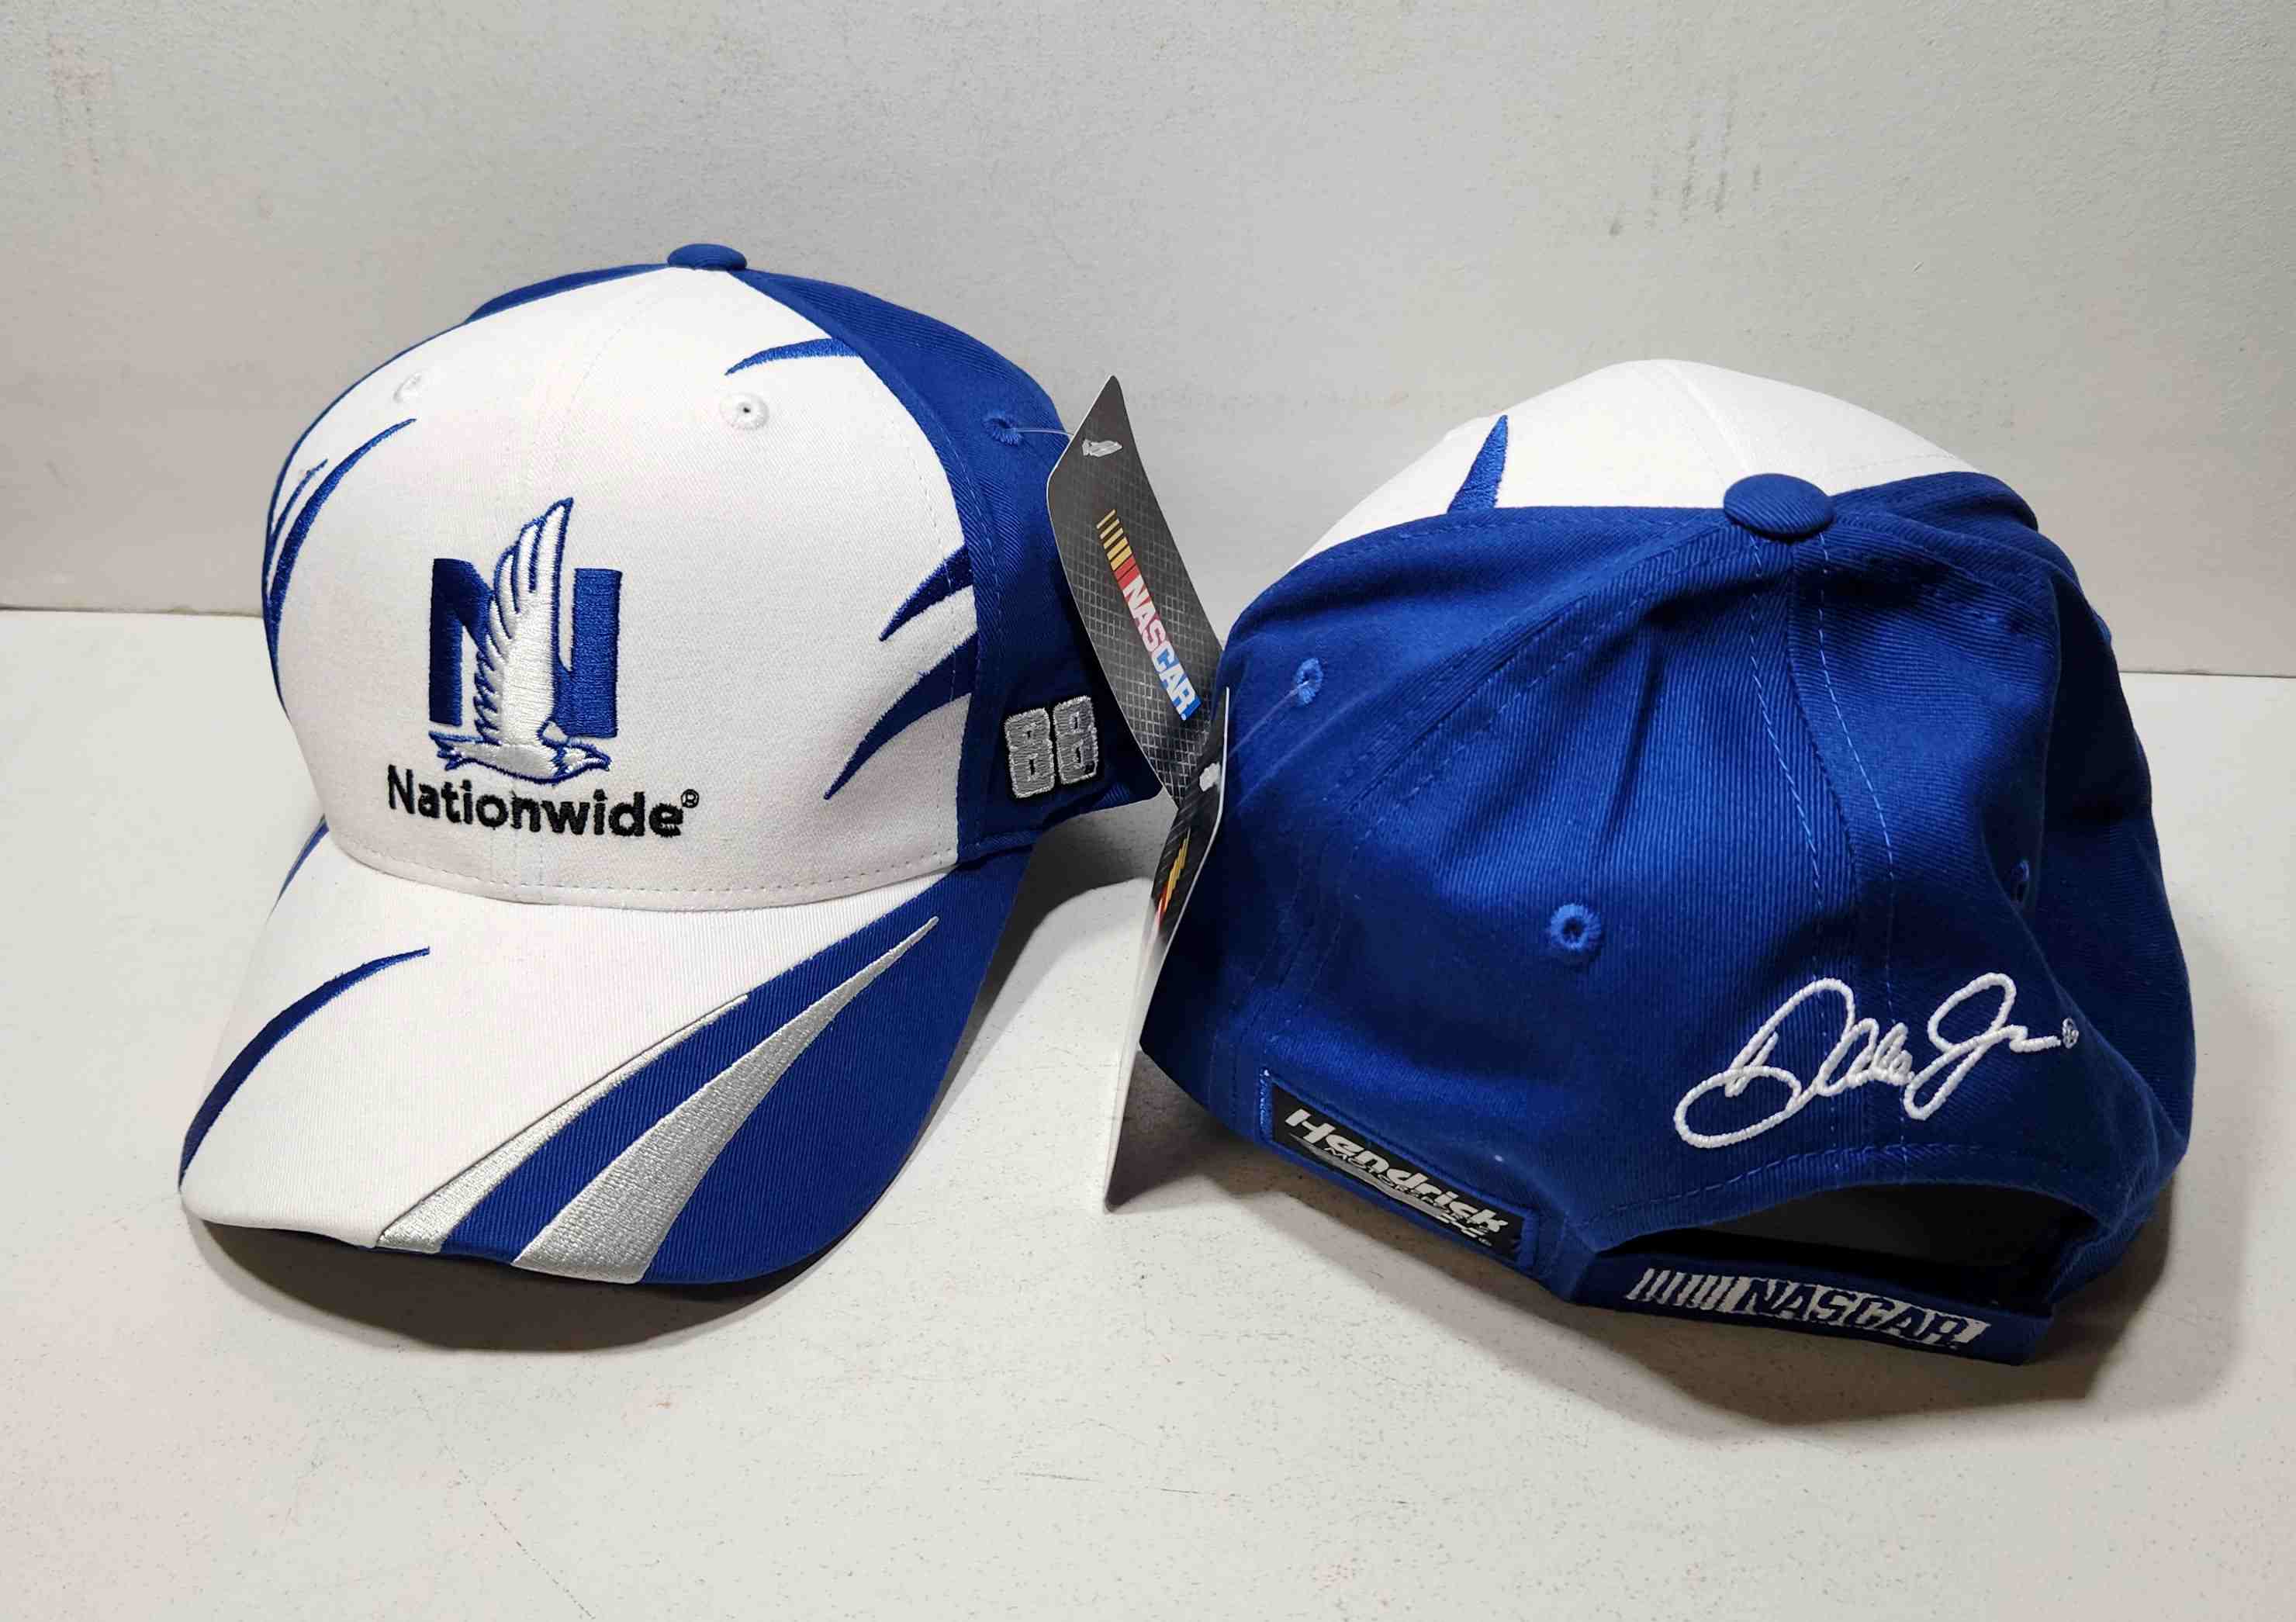 2016 Dale Earnhardt Jr Nationwide Insurance "Jagged" hat